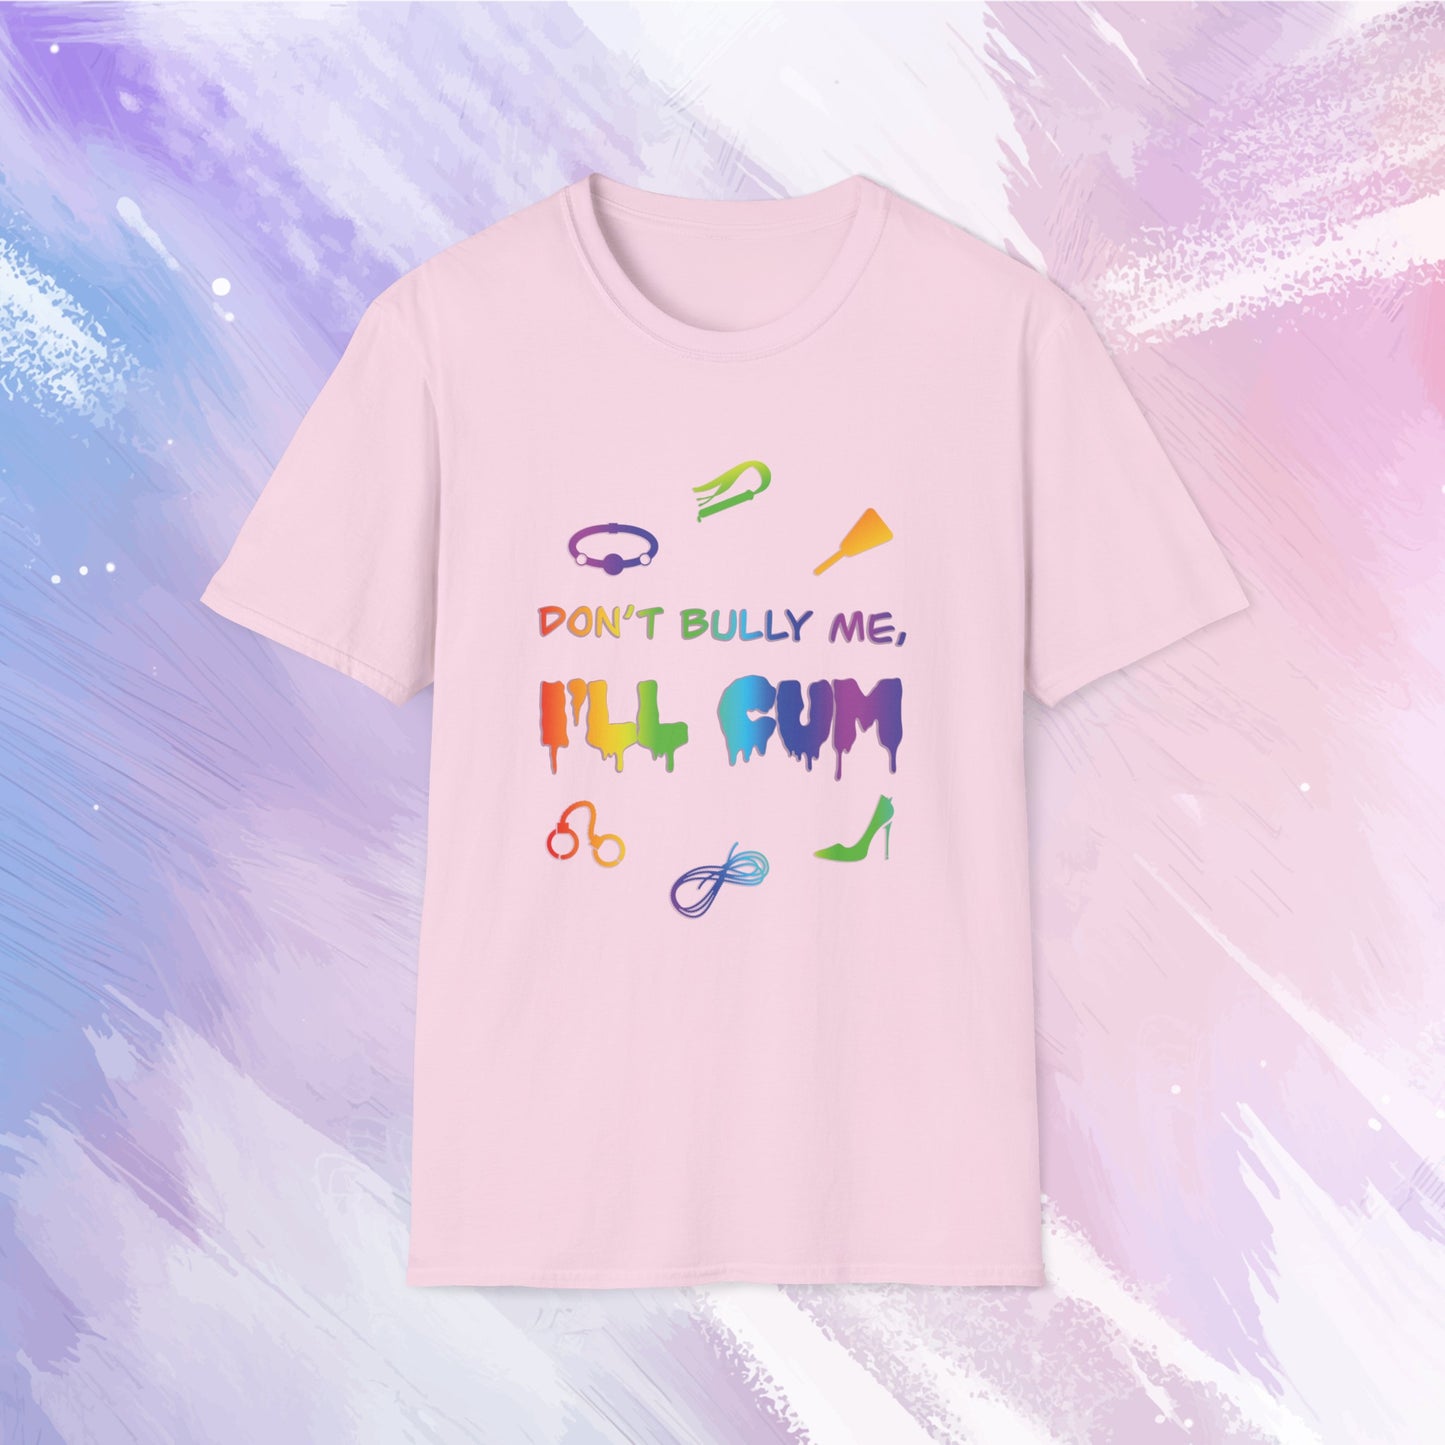 Don't Bully Me, I'll Cum BDSM T-Shirt - LGBTQ Kink Shirt